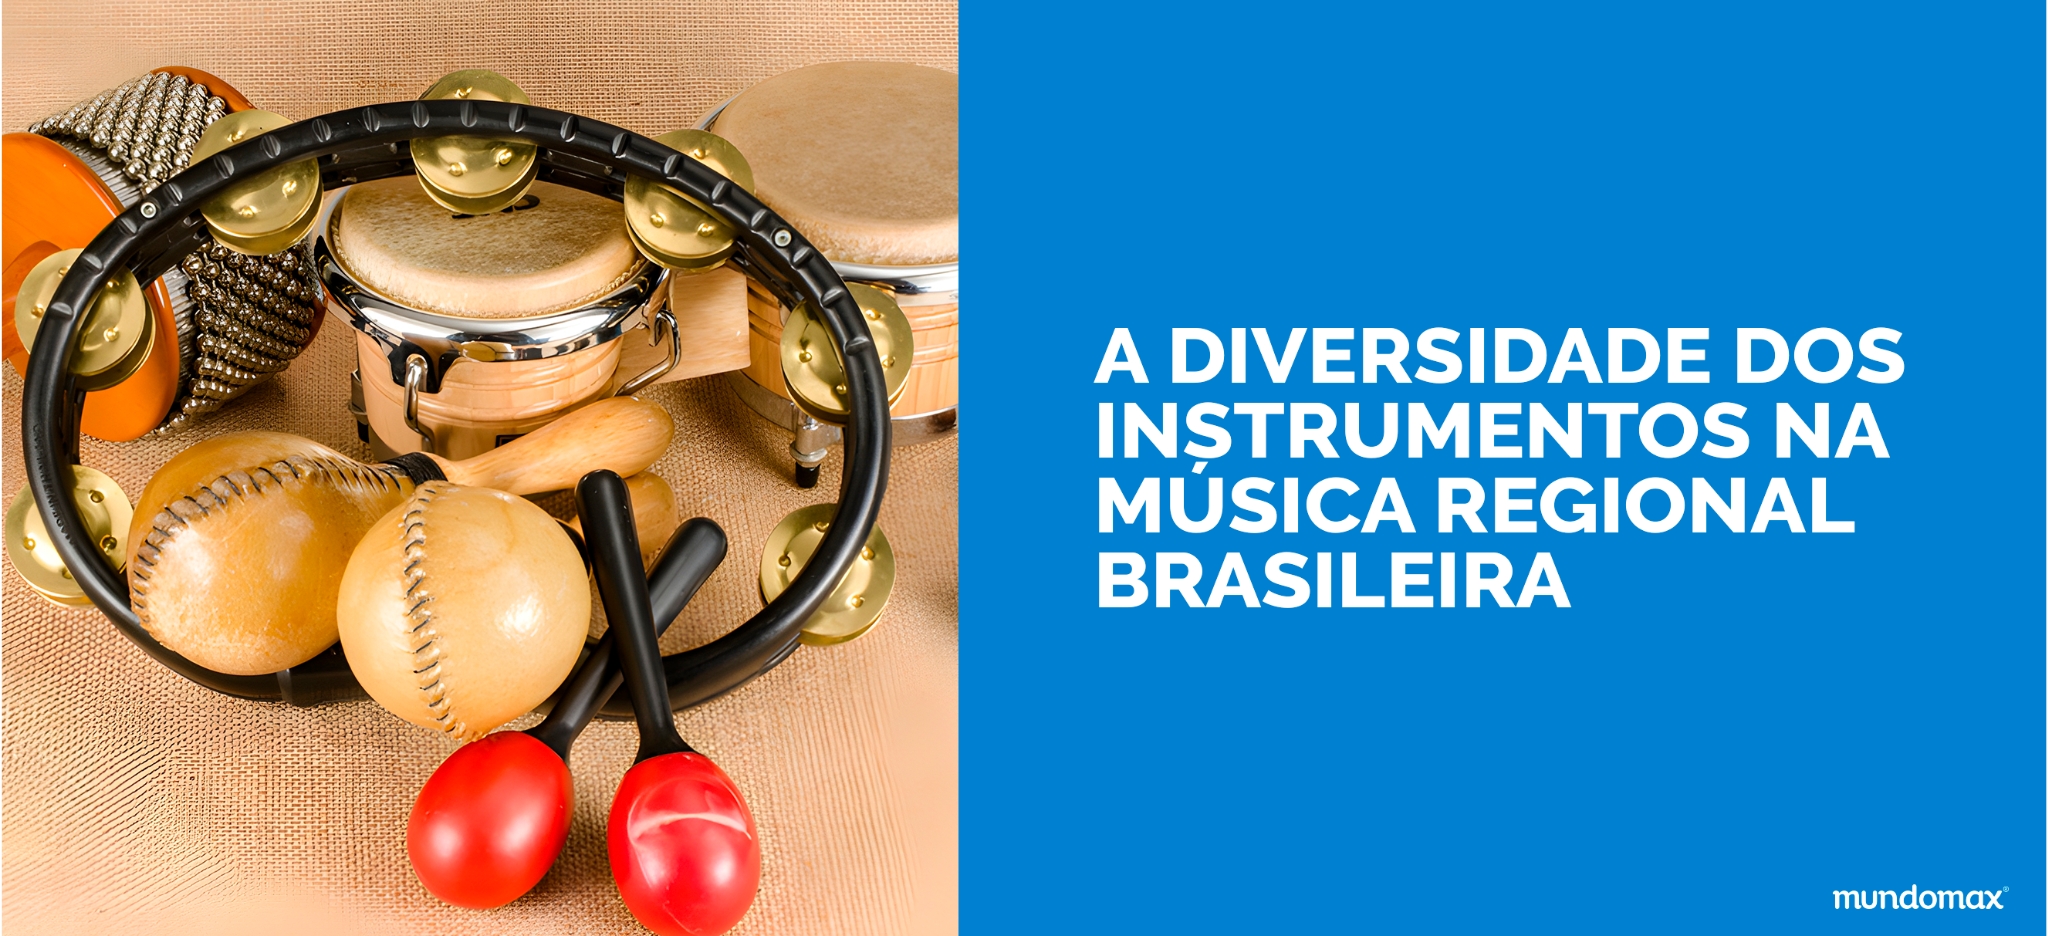 A diversidade dos instrumentos na música regional brasileira